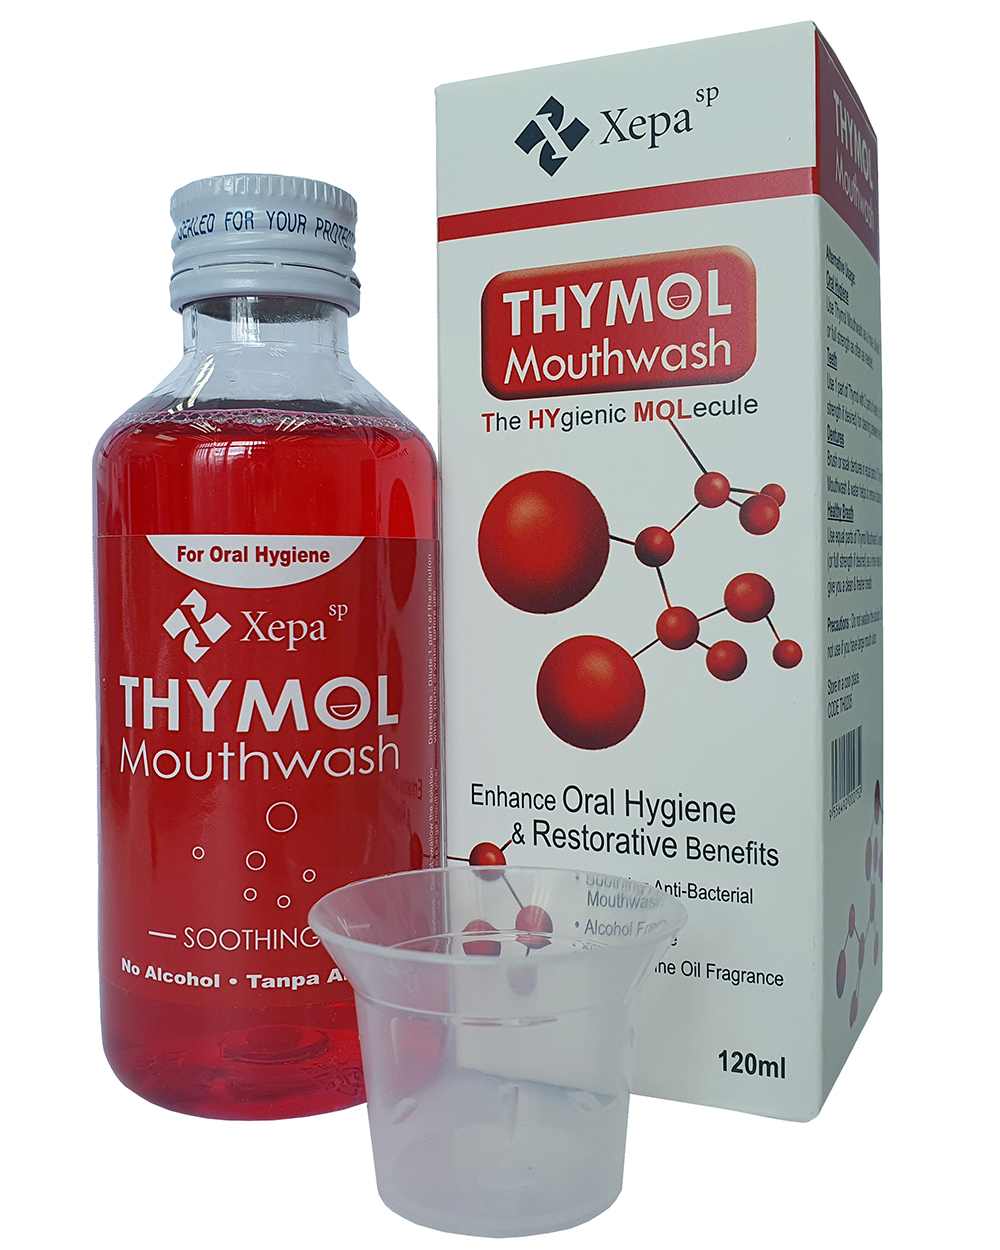 Thymol-Mouthwash-The-Hygienic-MOLecule